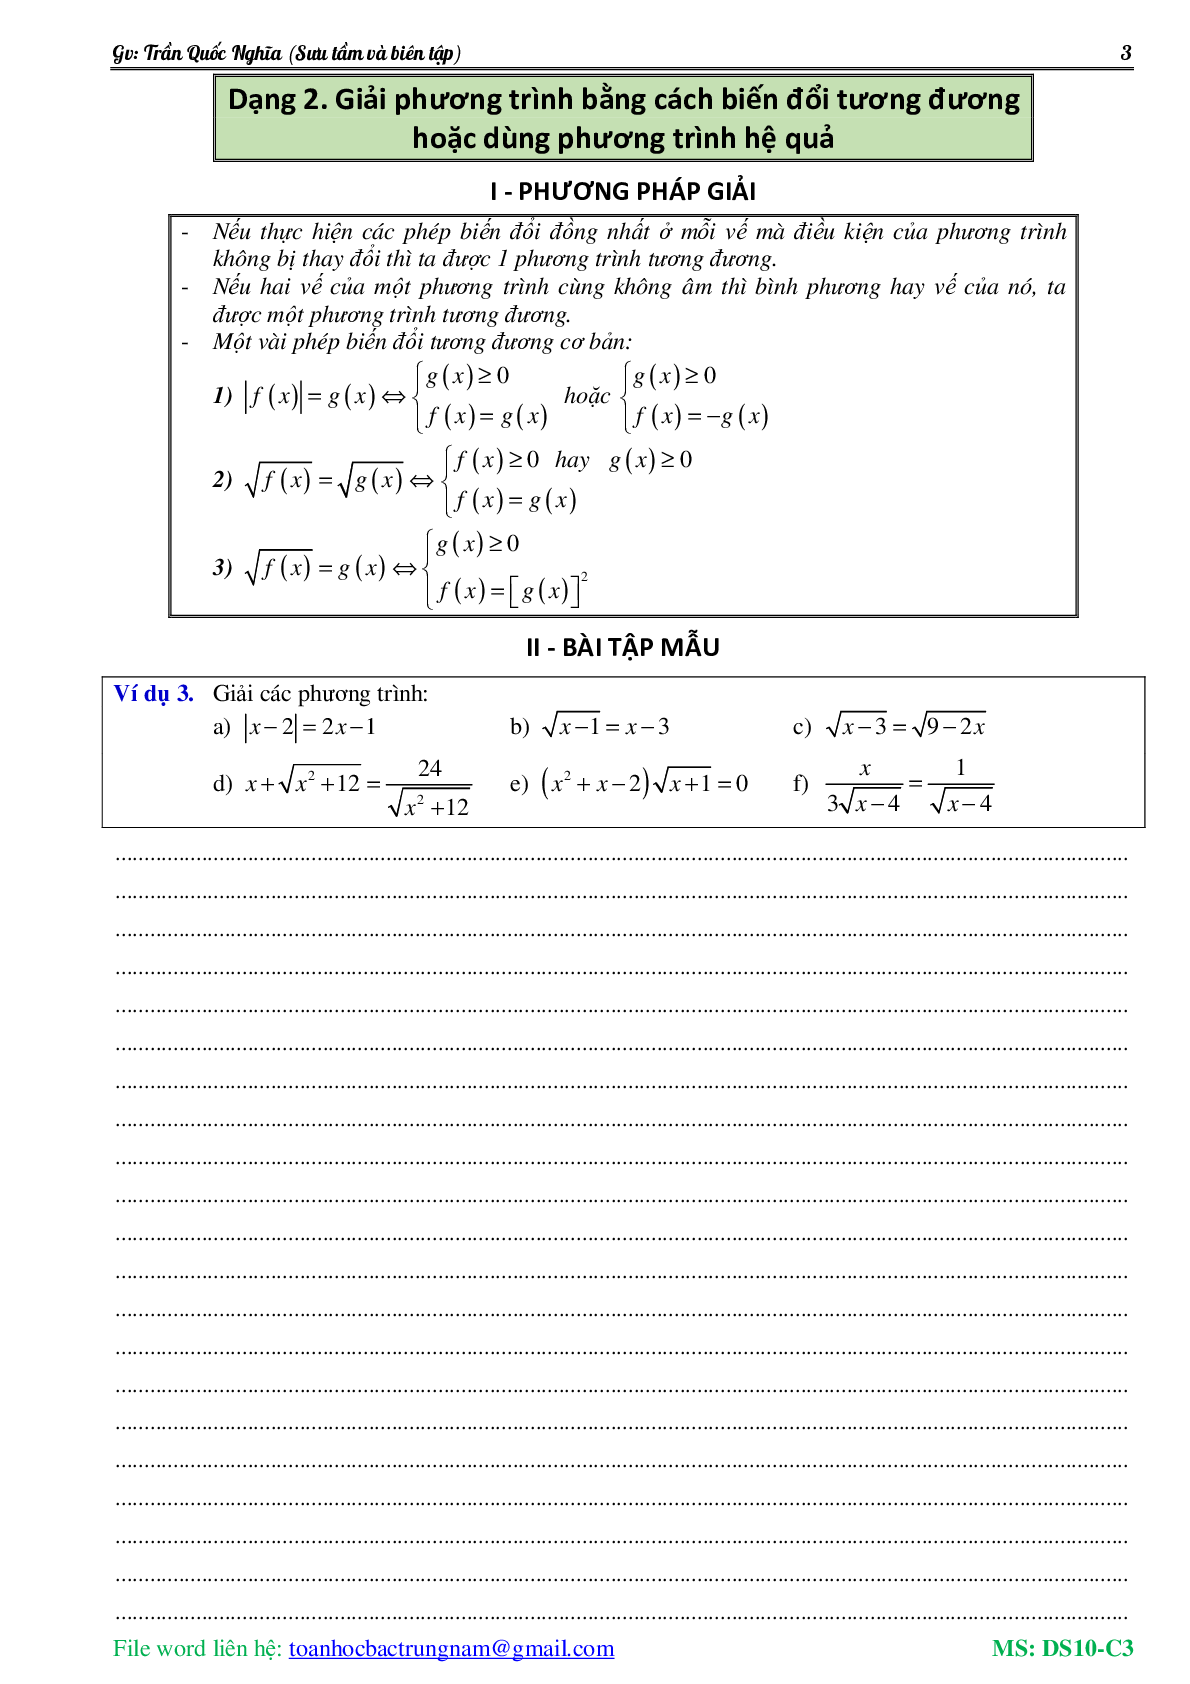 Lý thuyết, bài tập về Phương trình và hệ phương trình có đáp án (trang 4)